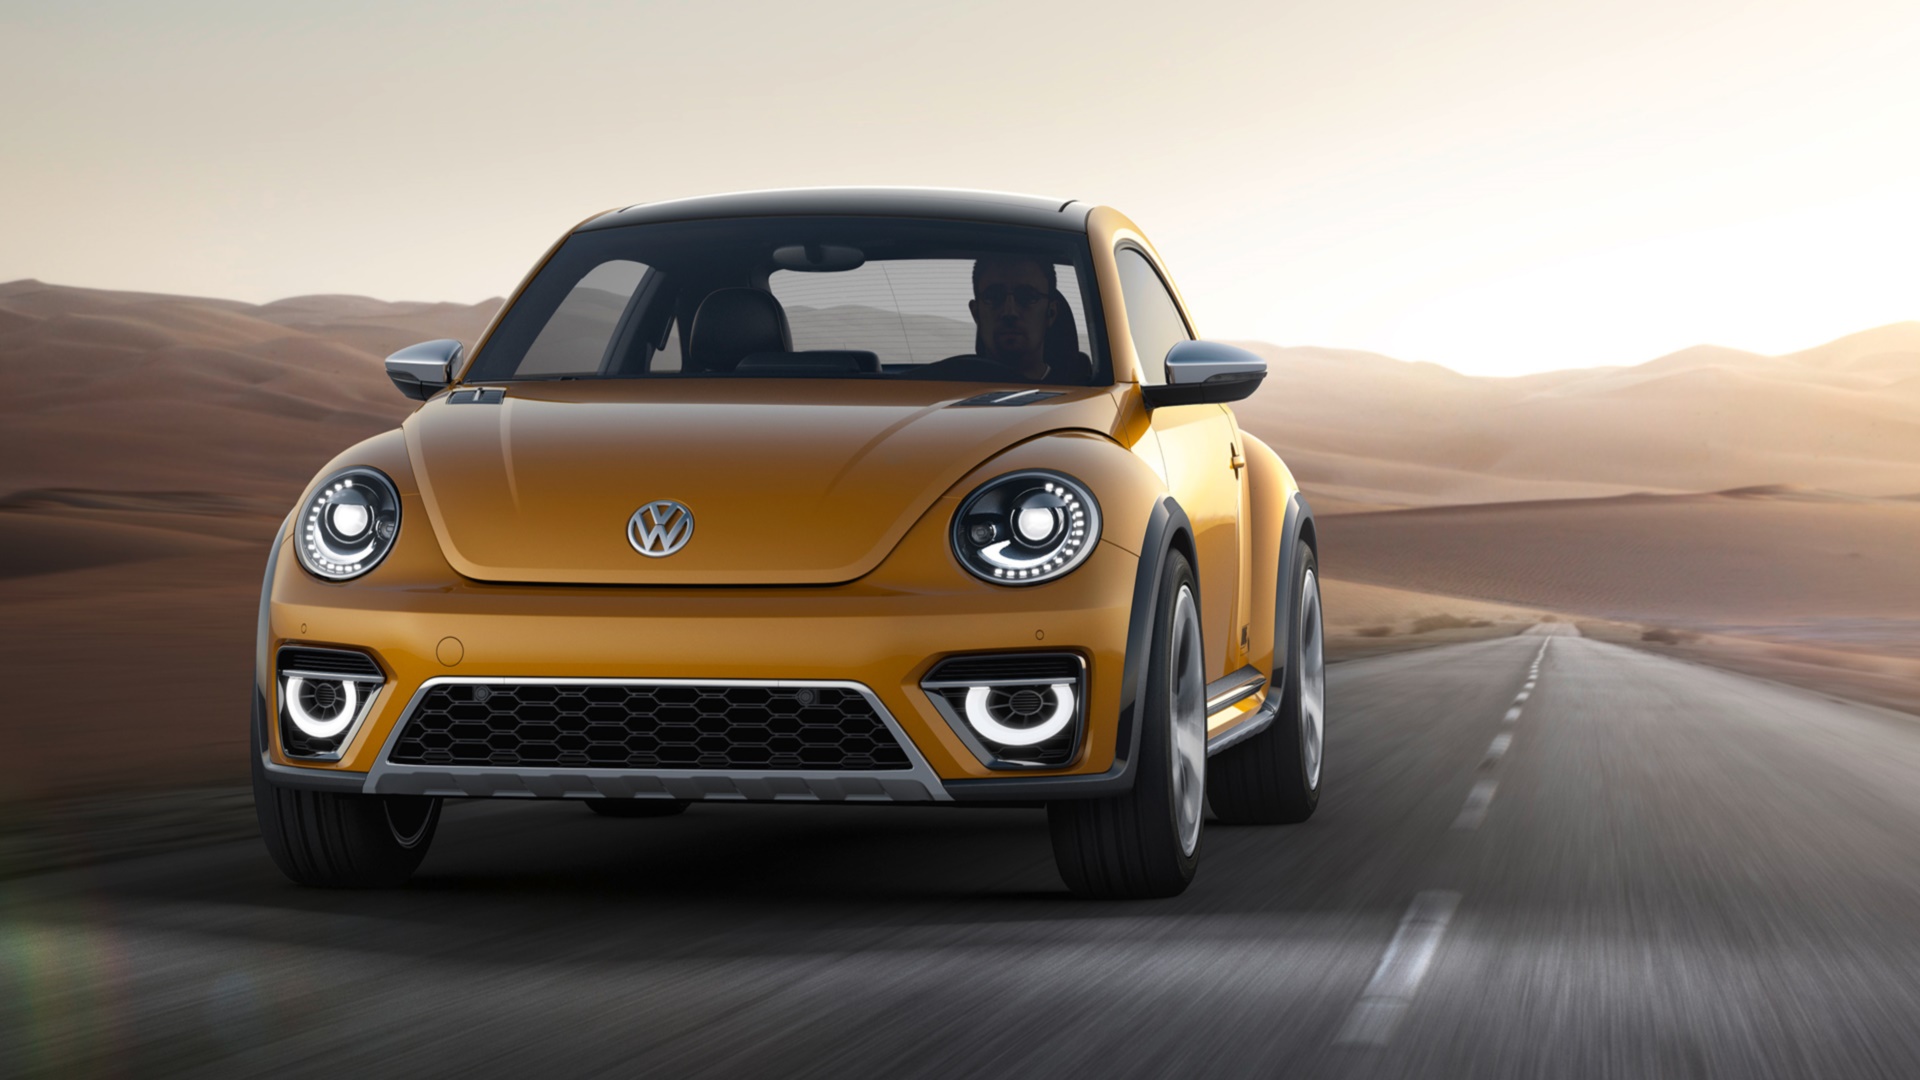 Free download wallpaper Volkswagen, Vehicles, 2014 Volkswagen Beetle Dune Concept on your PC desktop